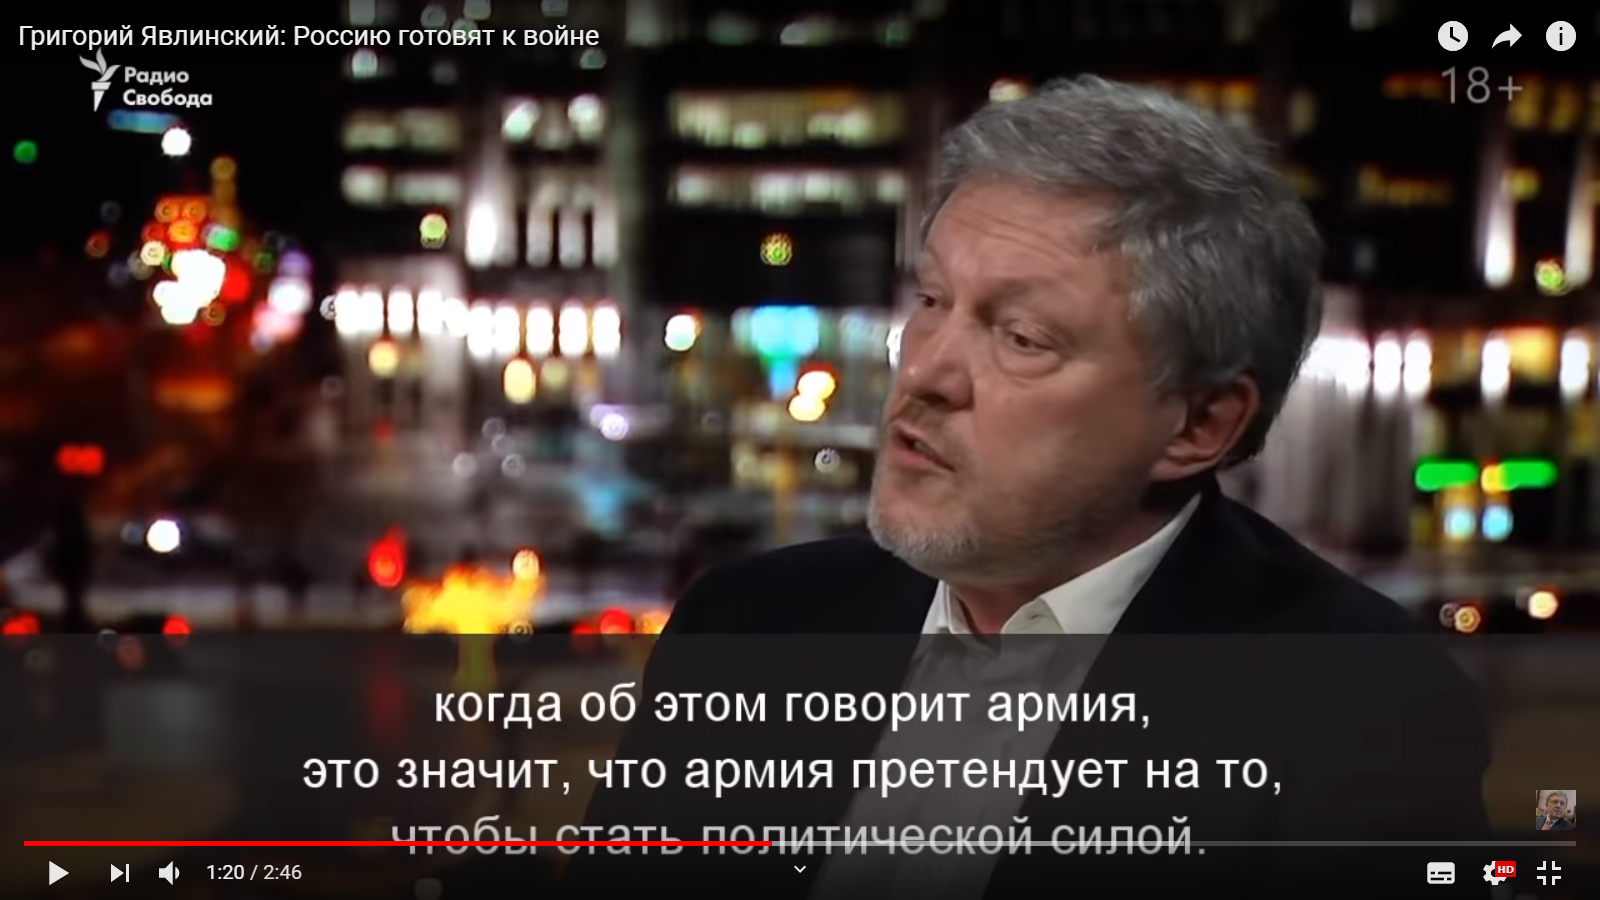 Григорий Явлинский: «Россию готовят к войне...»